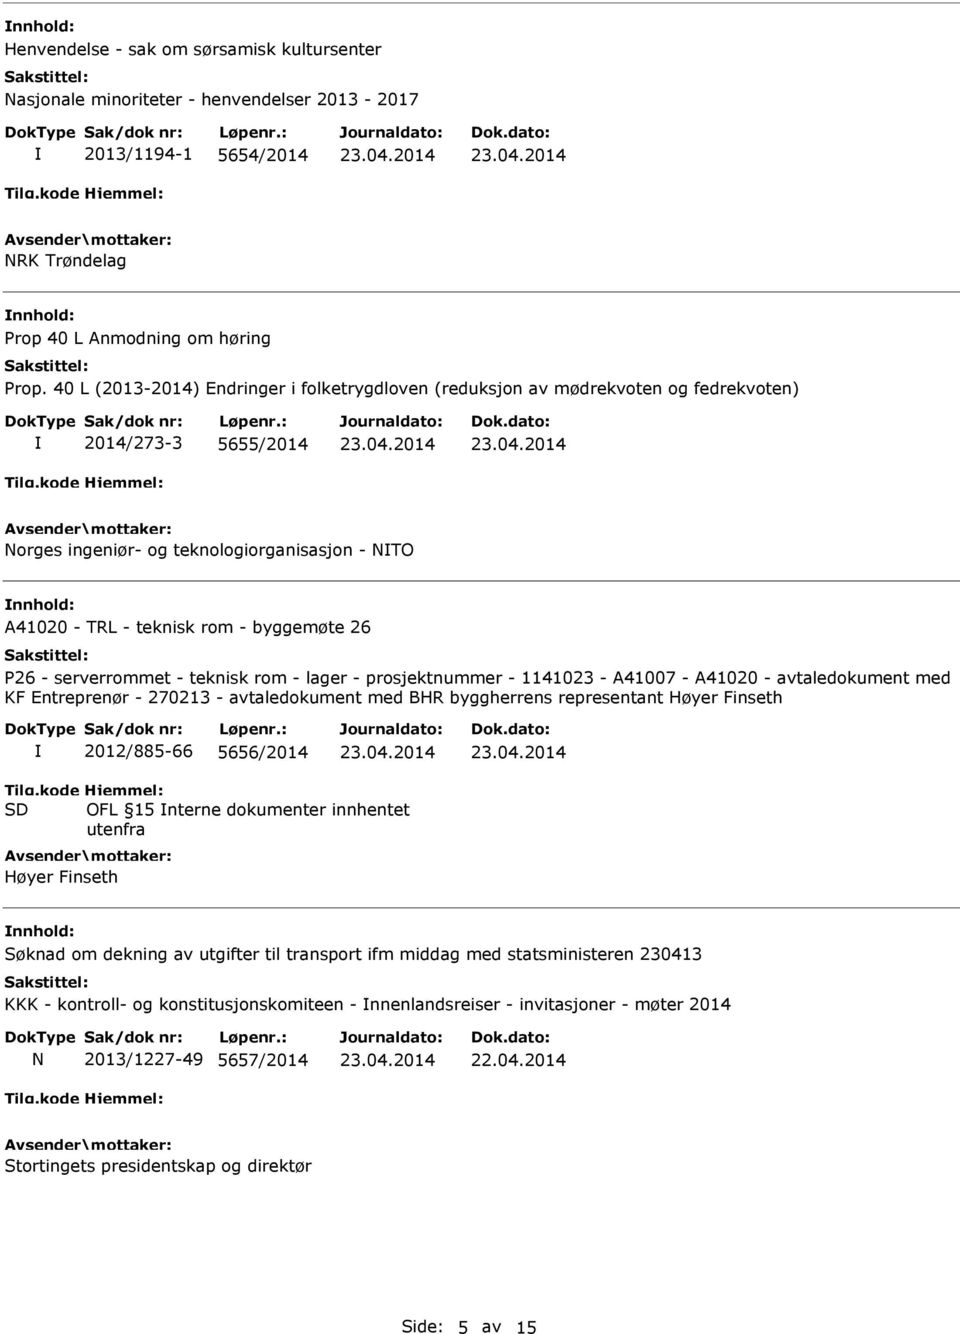 P26 - serverrommet - teknisk rom - lager - prosjektnummer - 1141023 - A41007 - A41020 - avtaledokument med KF Entreprenør - 270213 - avtaledokument med BHR byggherrens representant Høyer Finseth